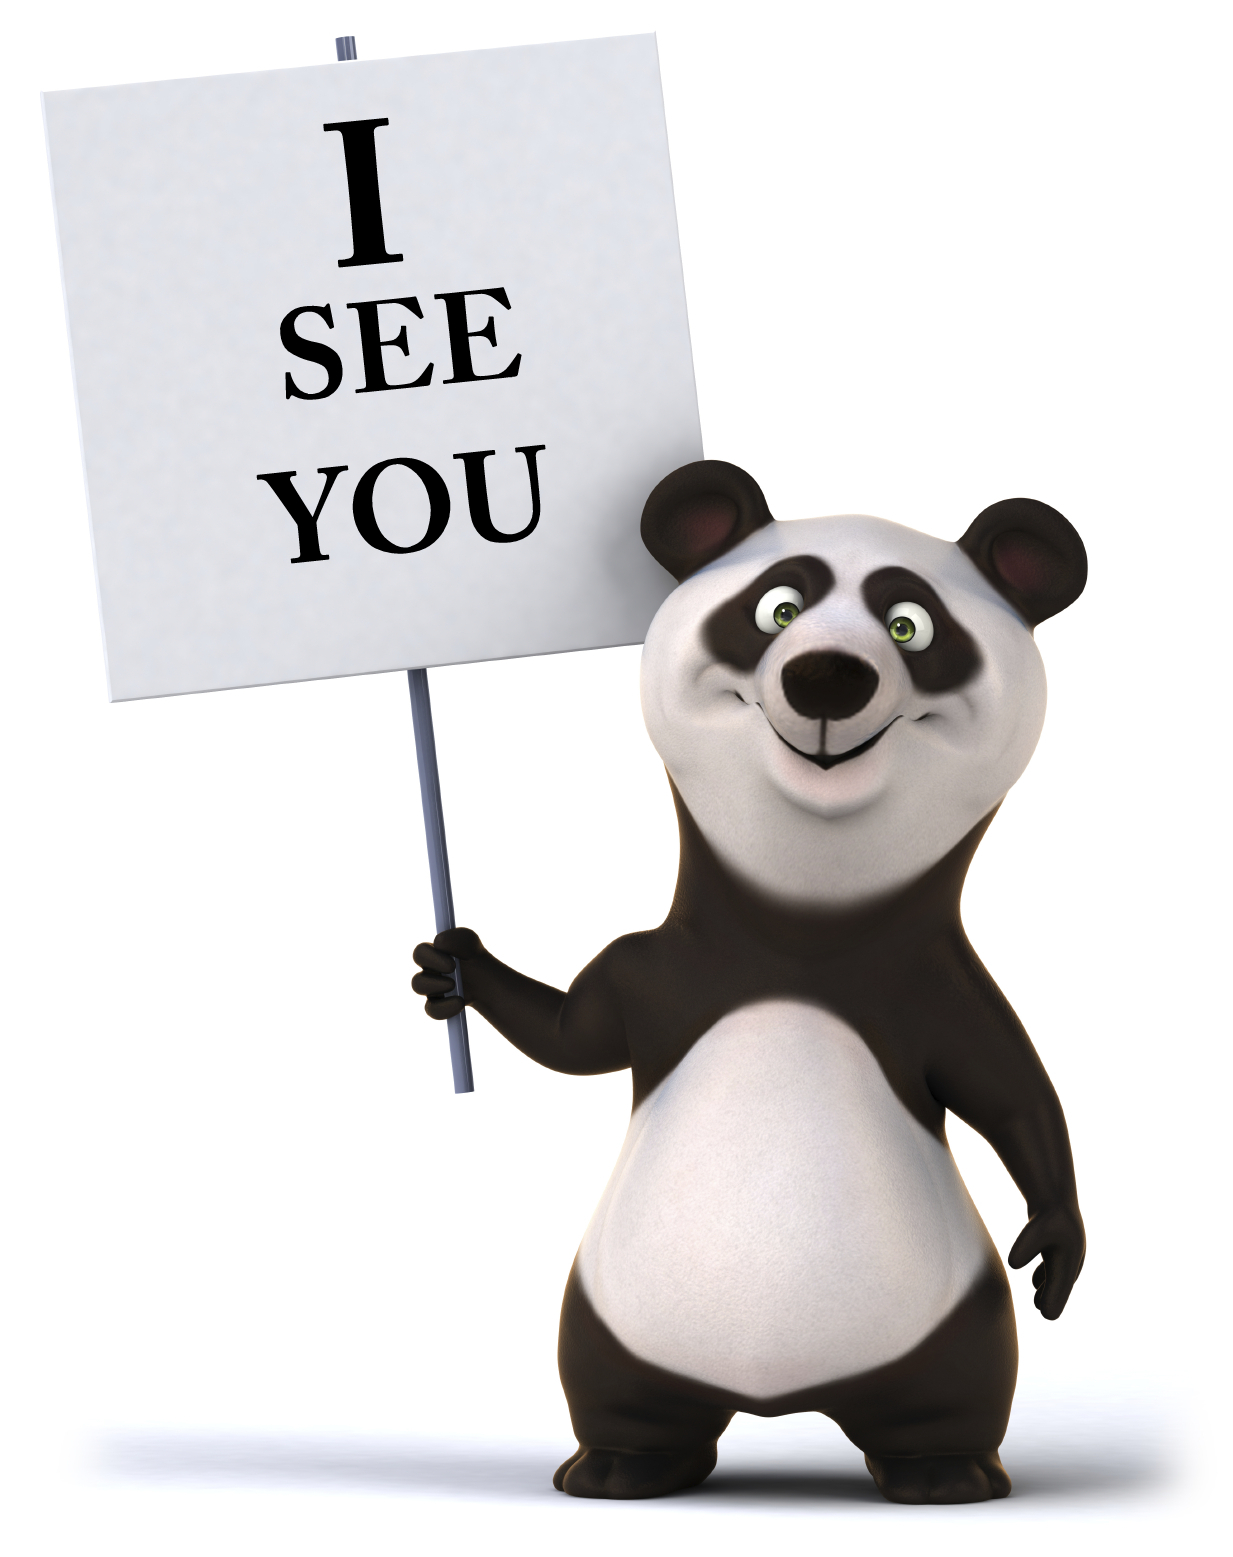 Has Anybody Seen My Panda?